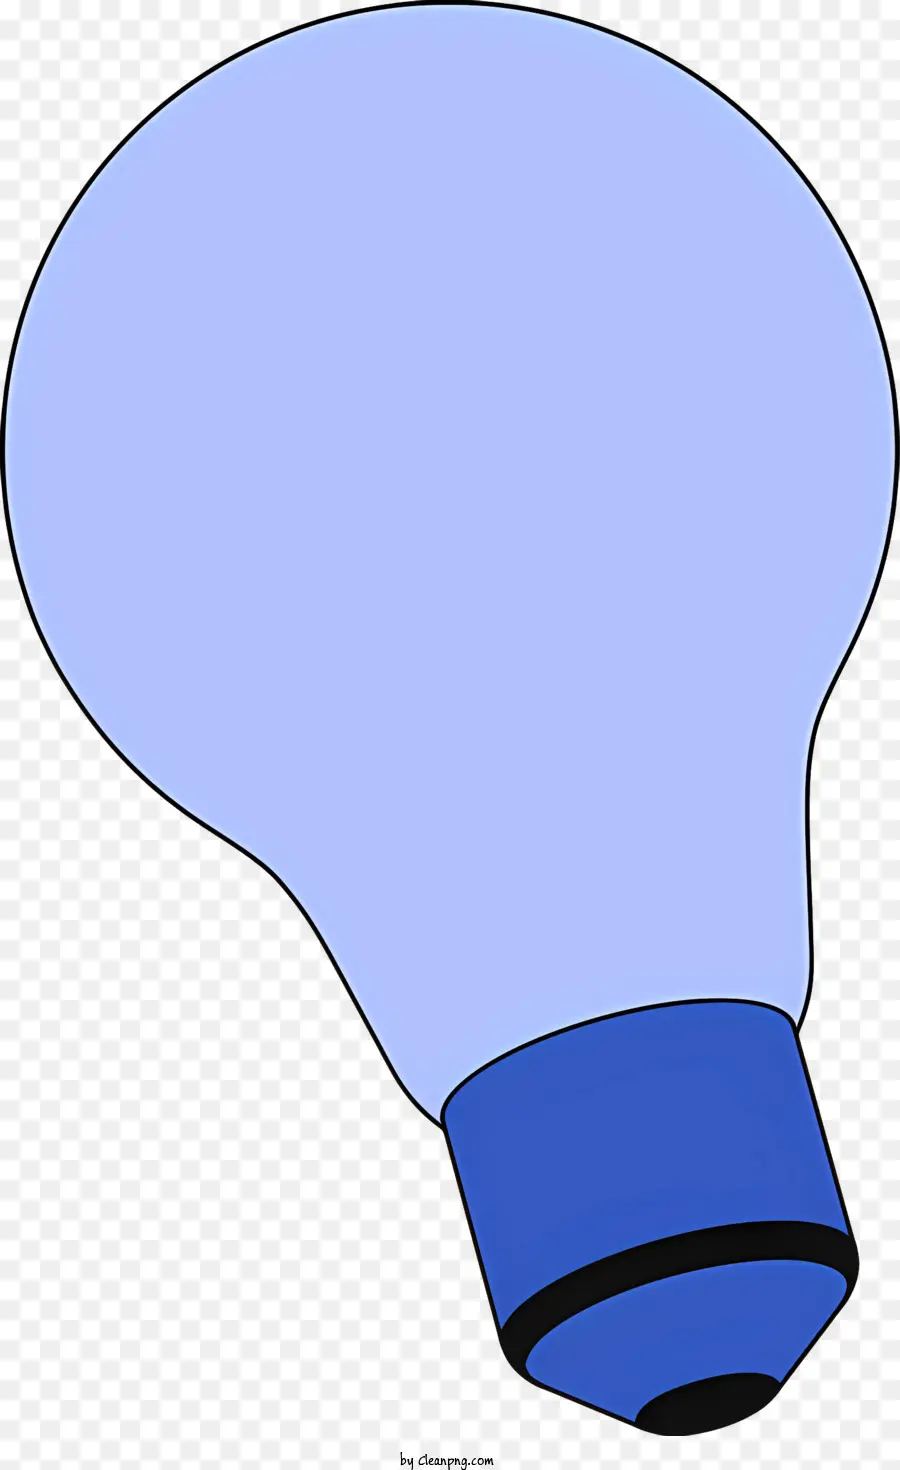 objects blue light bulb reflective light bulb socket lighting inspiration lighting design